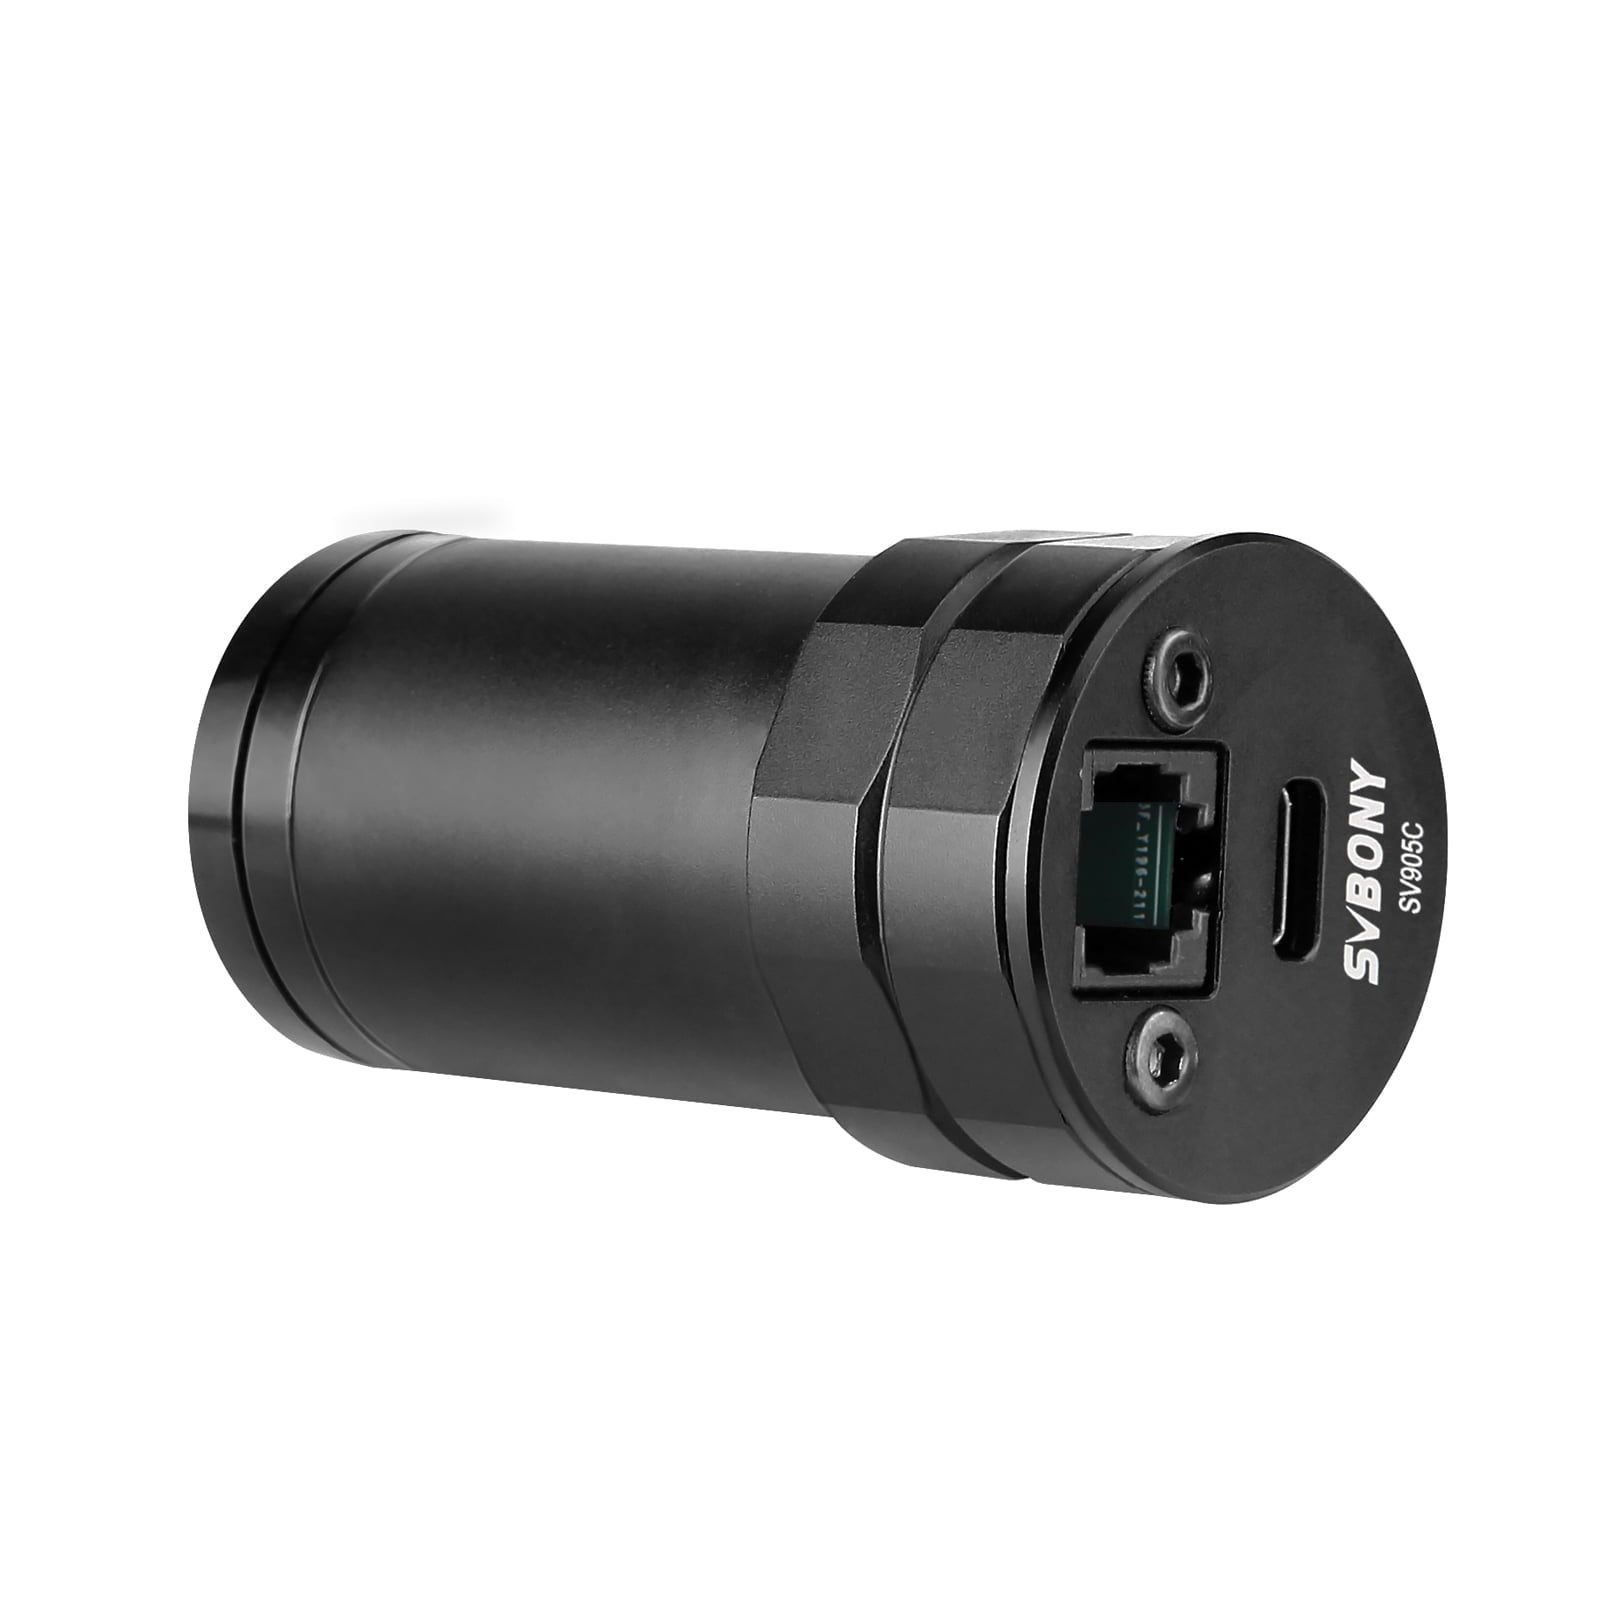 Svbony Camera Svbony SV905C 1.2MP USB2.0 1.2MP Colour Planetary and Guiding Camera - F9198G